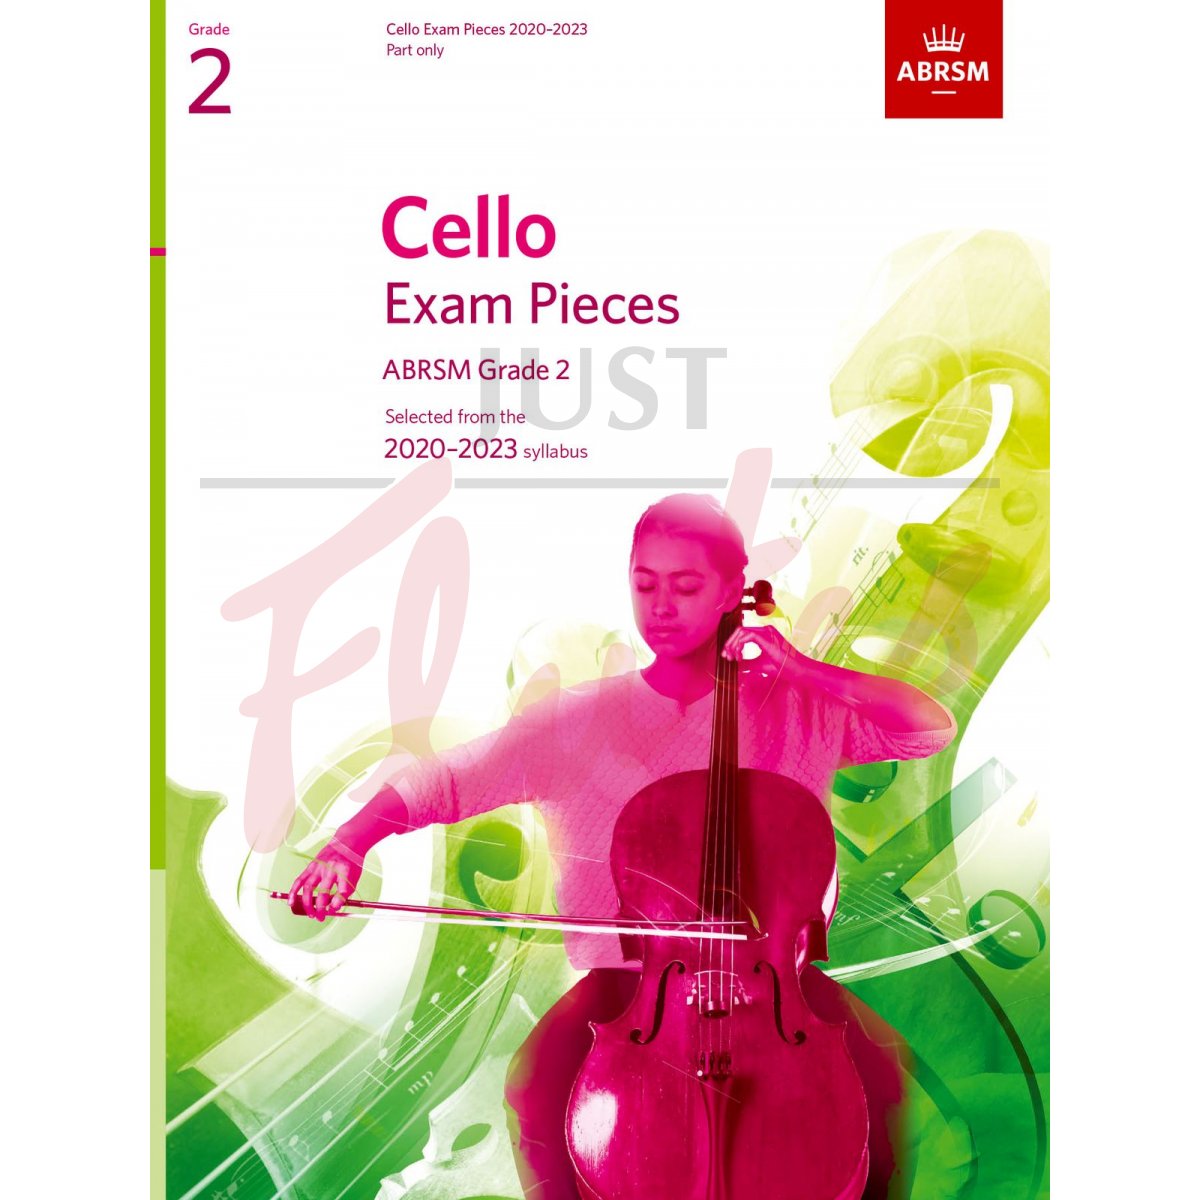 Cello Exam Pieces 2020-2023, Grade 2 [Part Only]